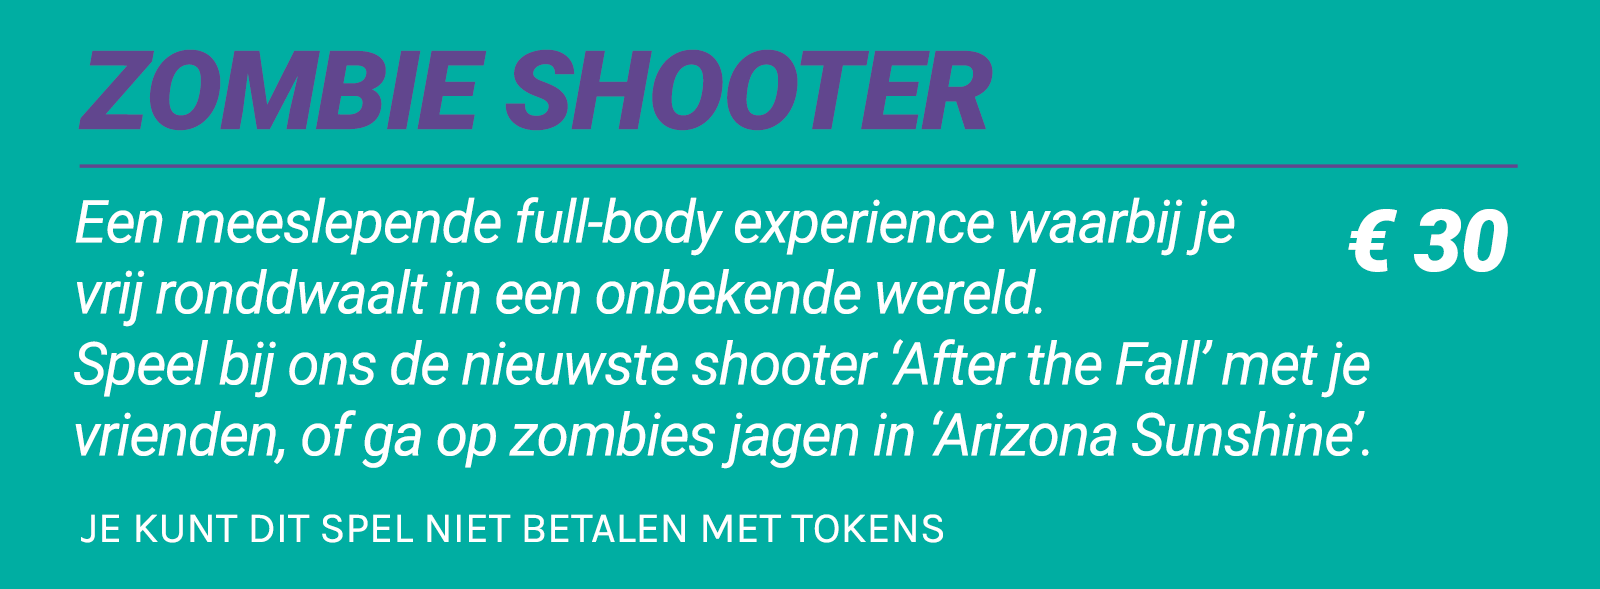 Website - NL Zombie shooter prijstlijst